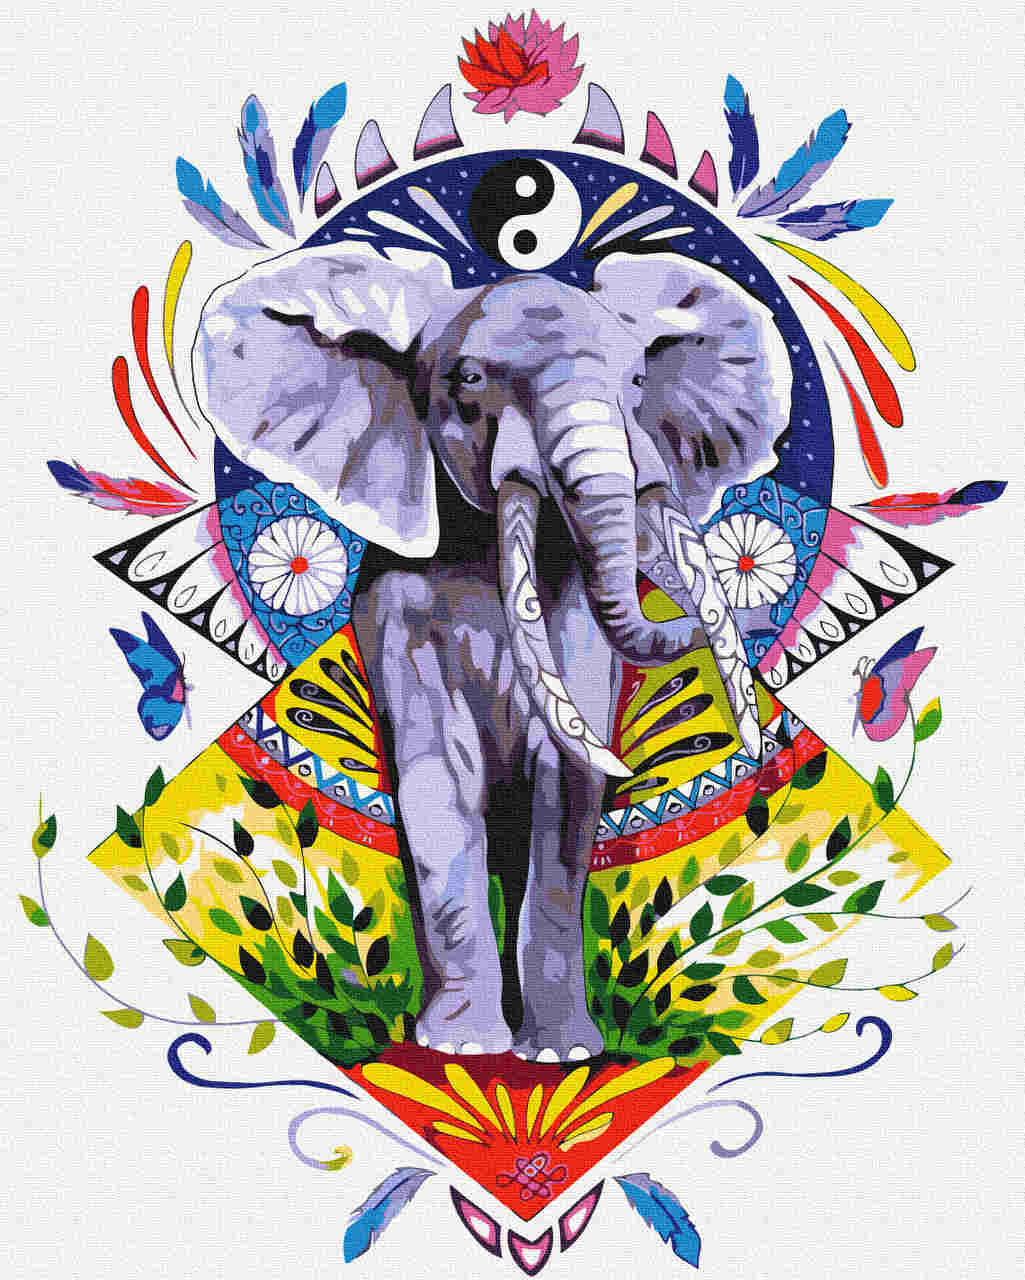 Malen nach Zahlen - life balance elefant - by Pixie Cold, mit Rahmen von Pixie Cold